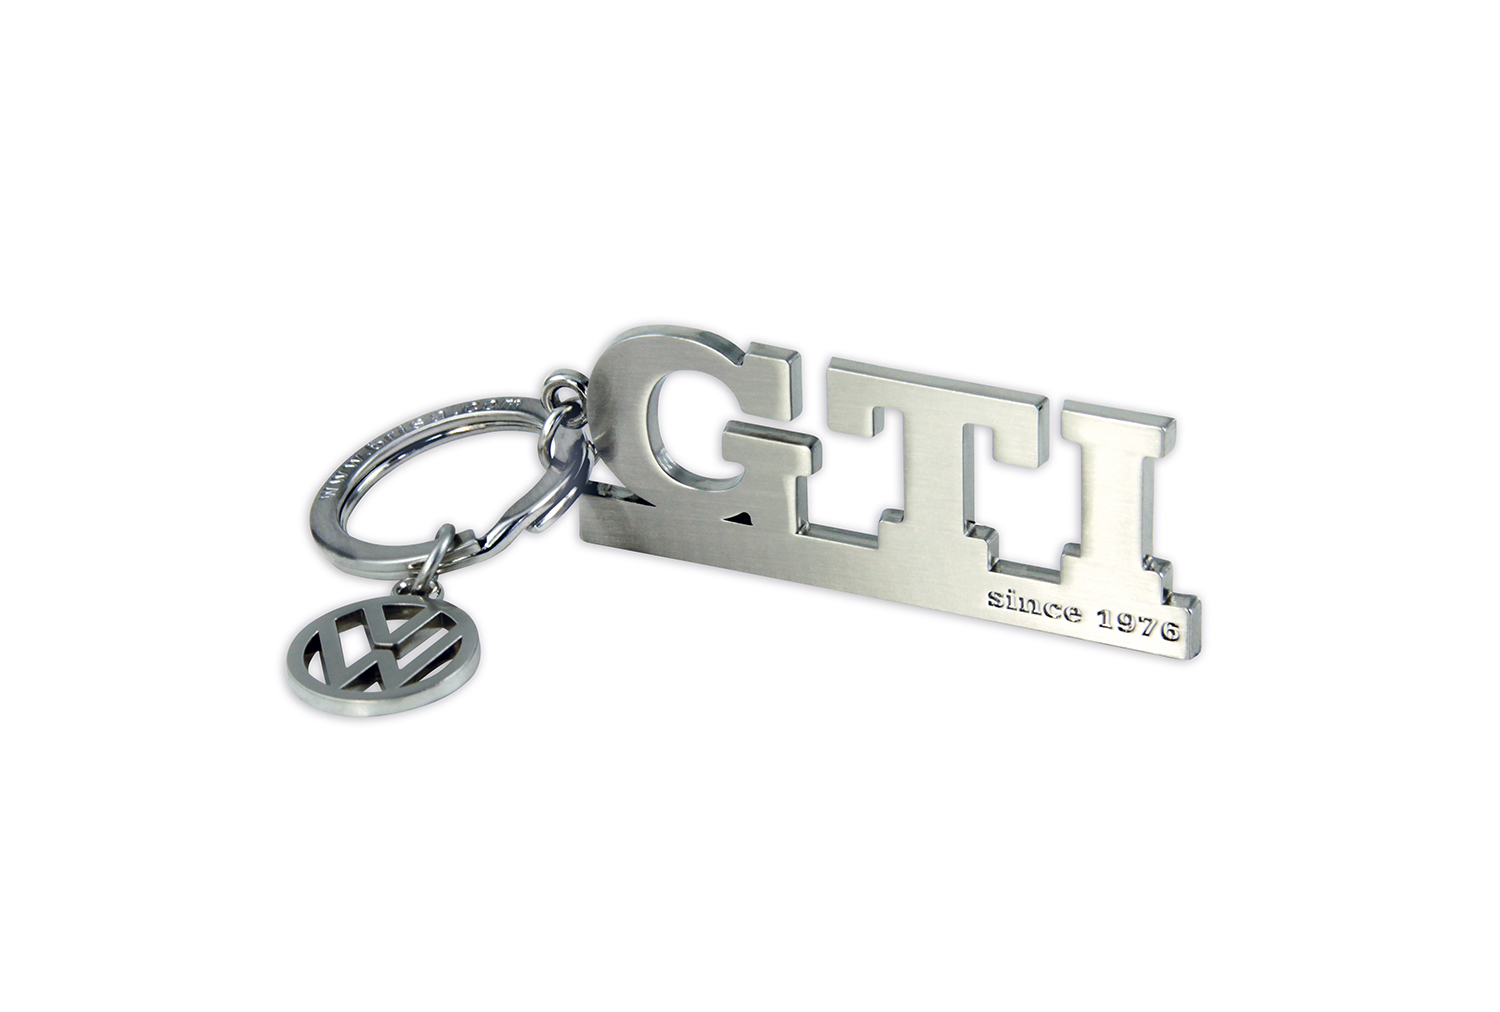 GTI Schlüsselanhänger mit Charm in Sichtverpackung - since 1976, Farbe: silber